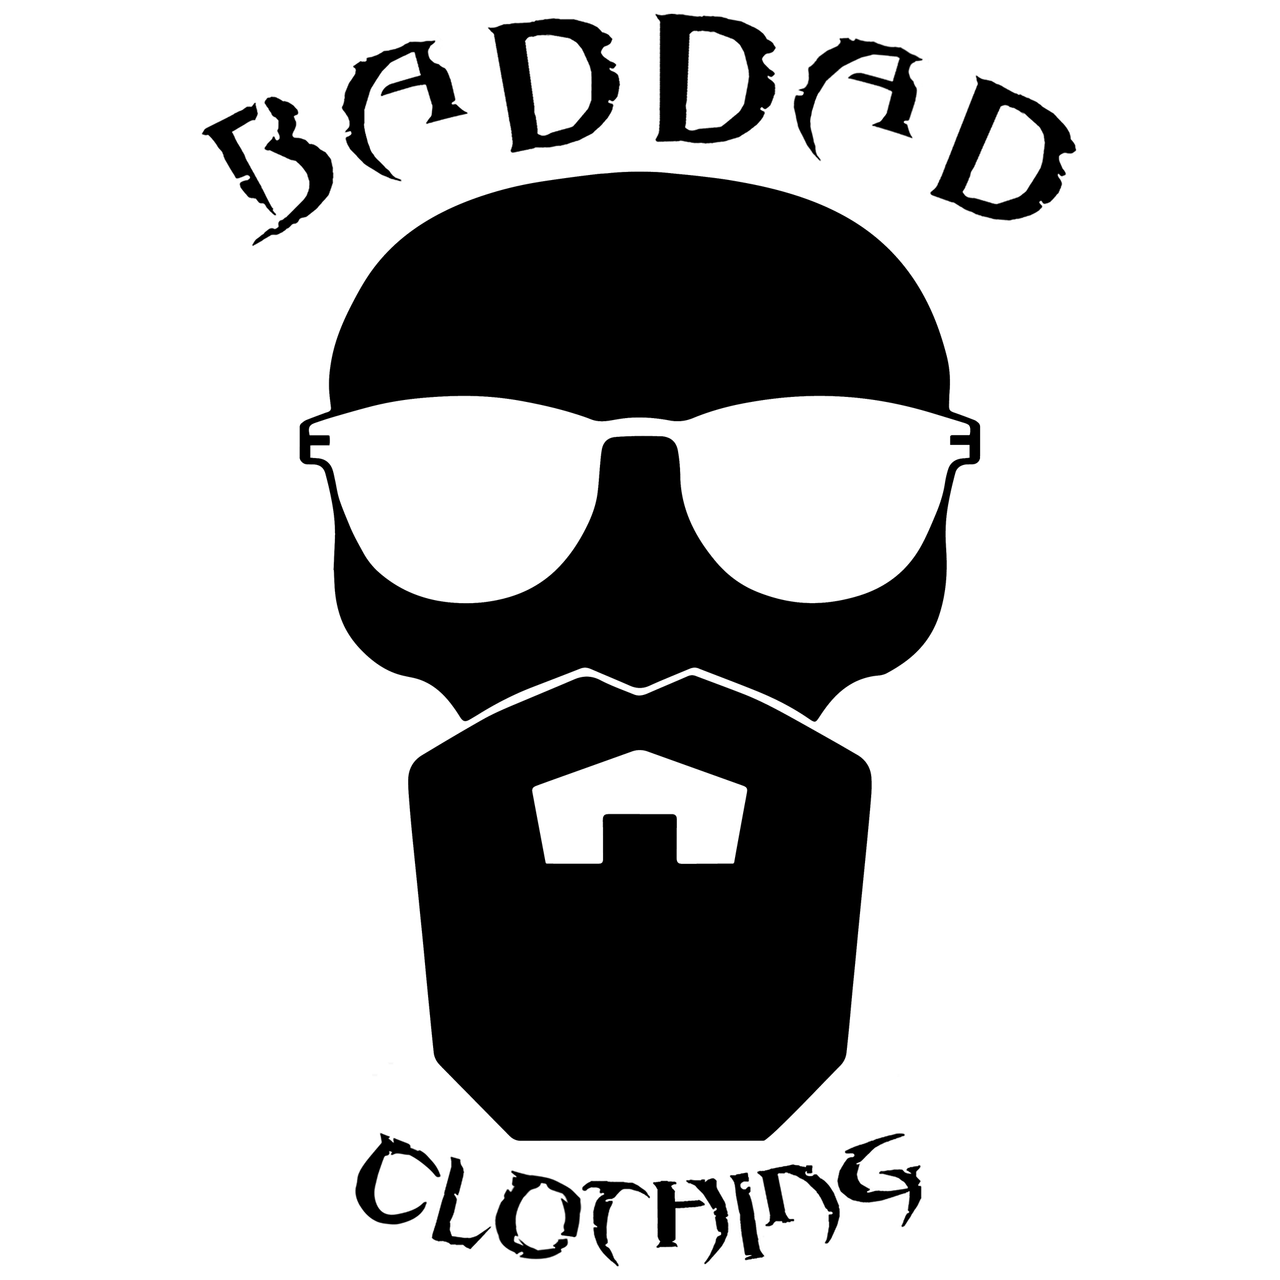 BADDAD Clothing Sticker (6873078169751)